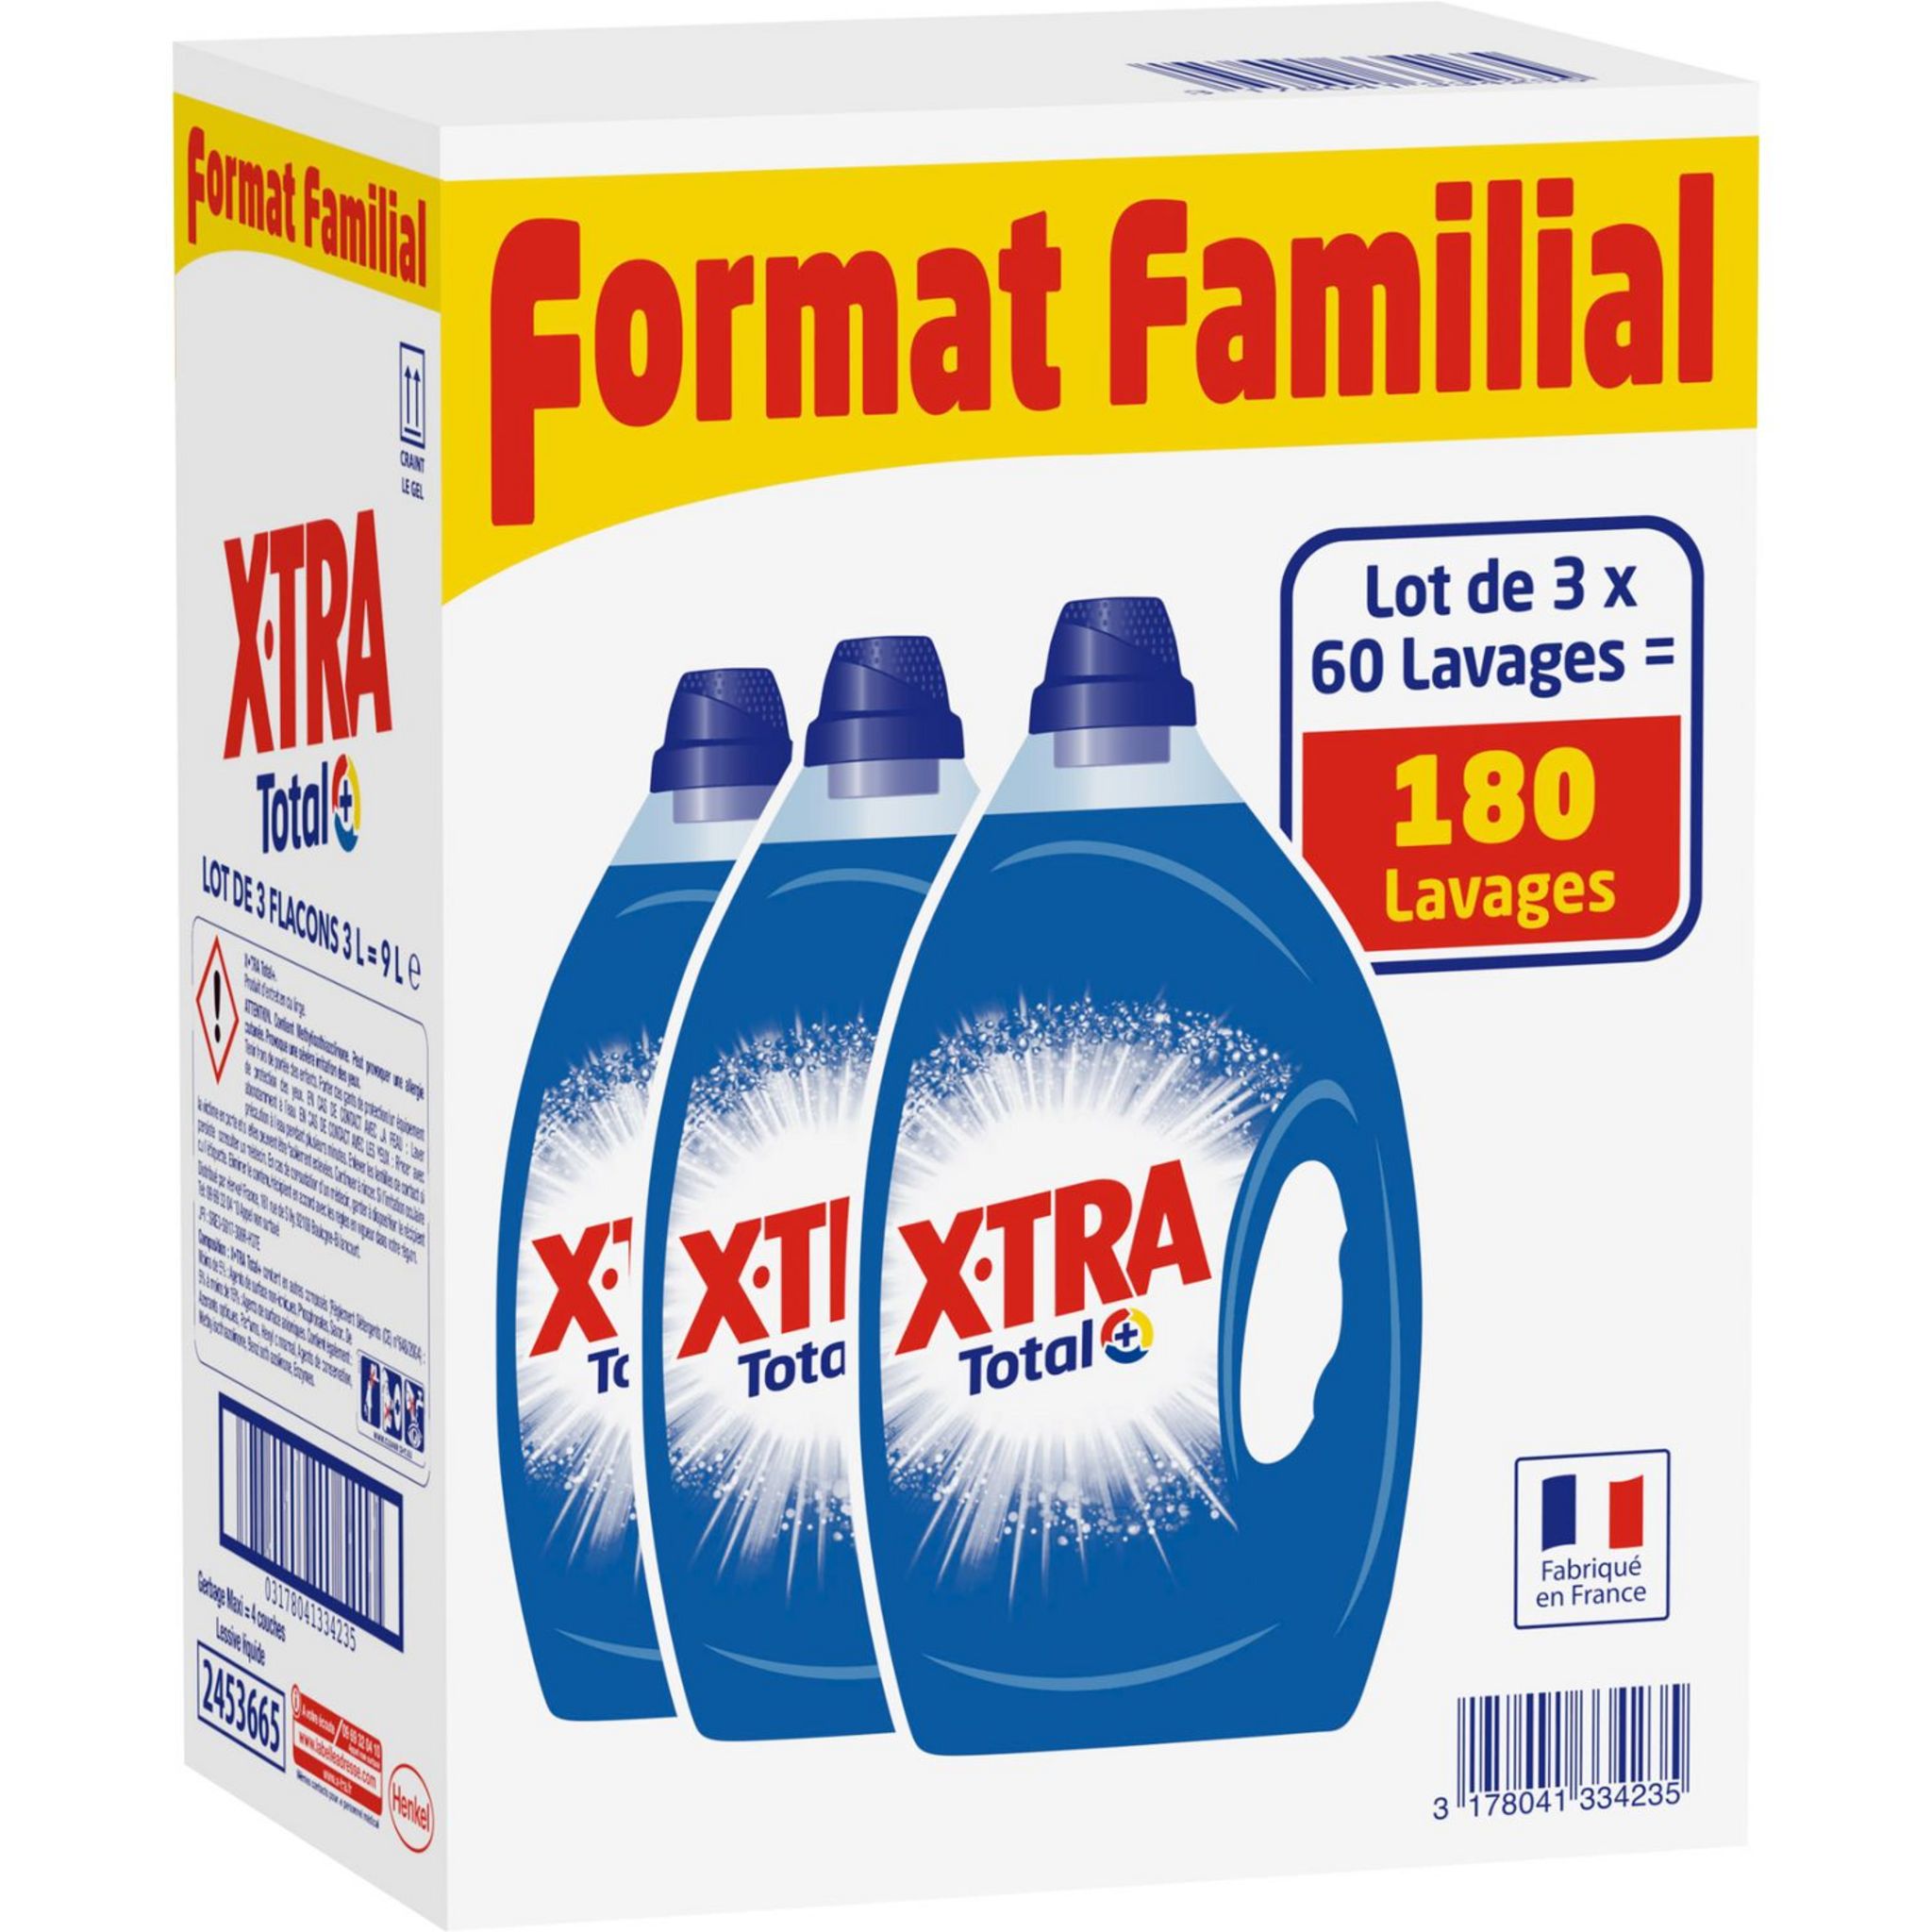 EXTRA Xtra lessive diluée total 90 lavages 3x3l lot familial pas